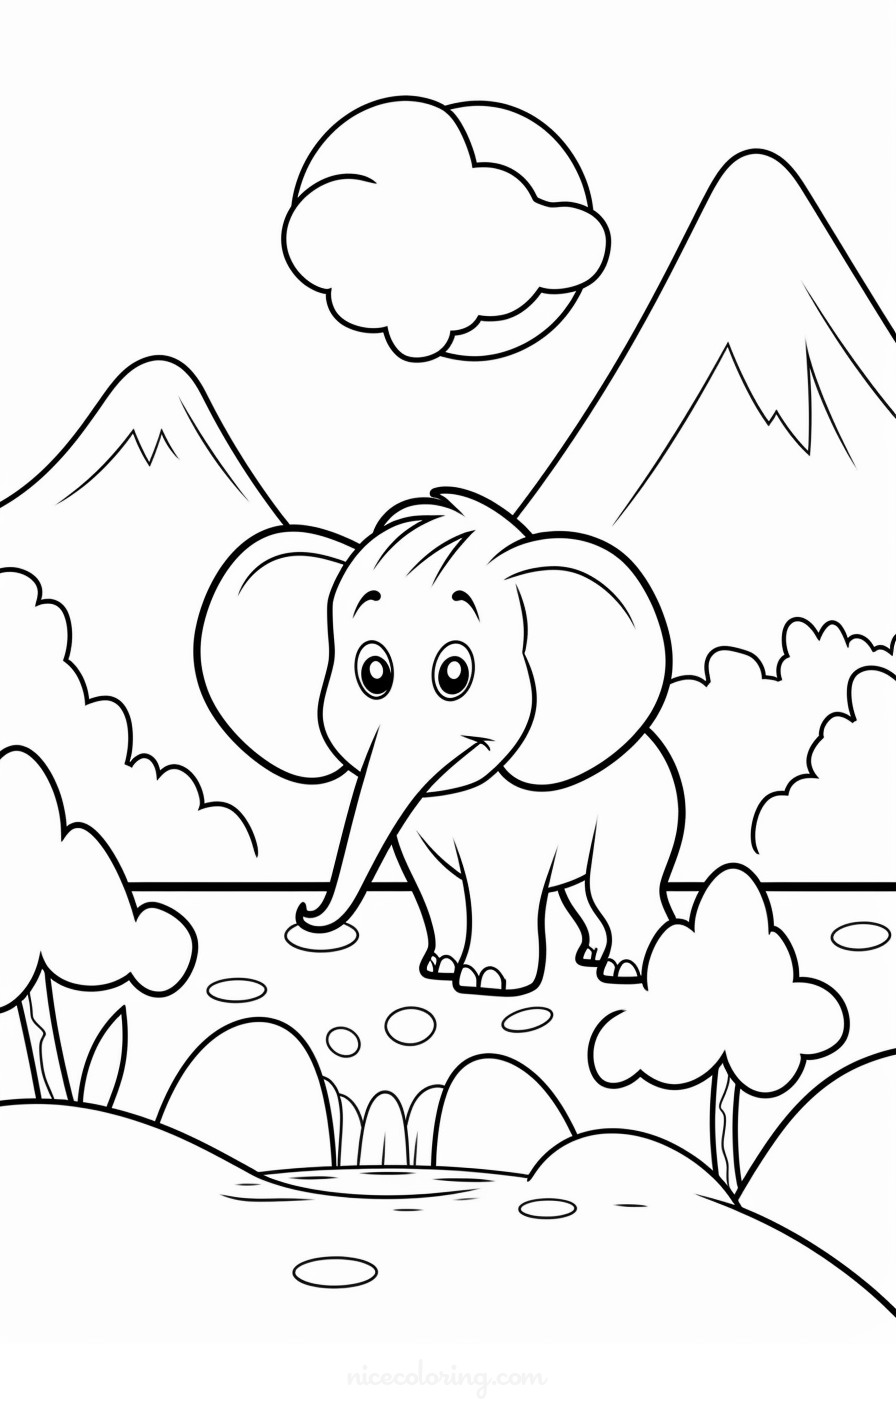 大象家庭在自然环境中的安详场景